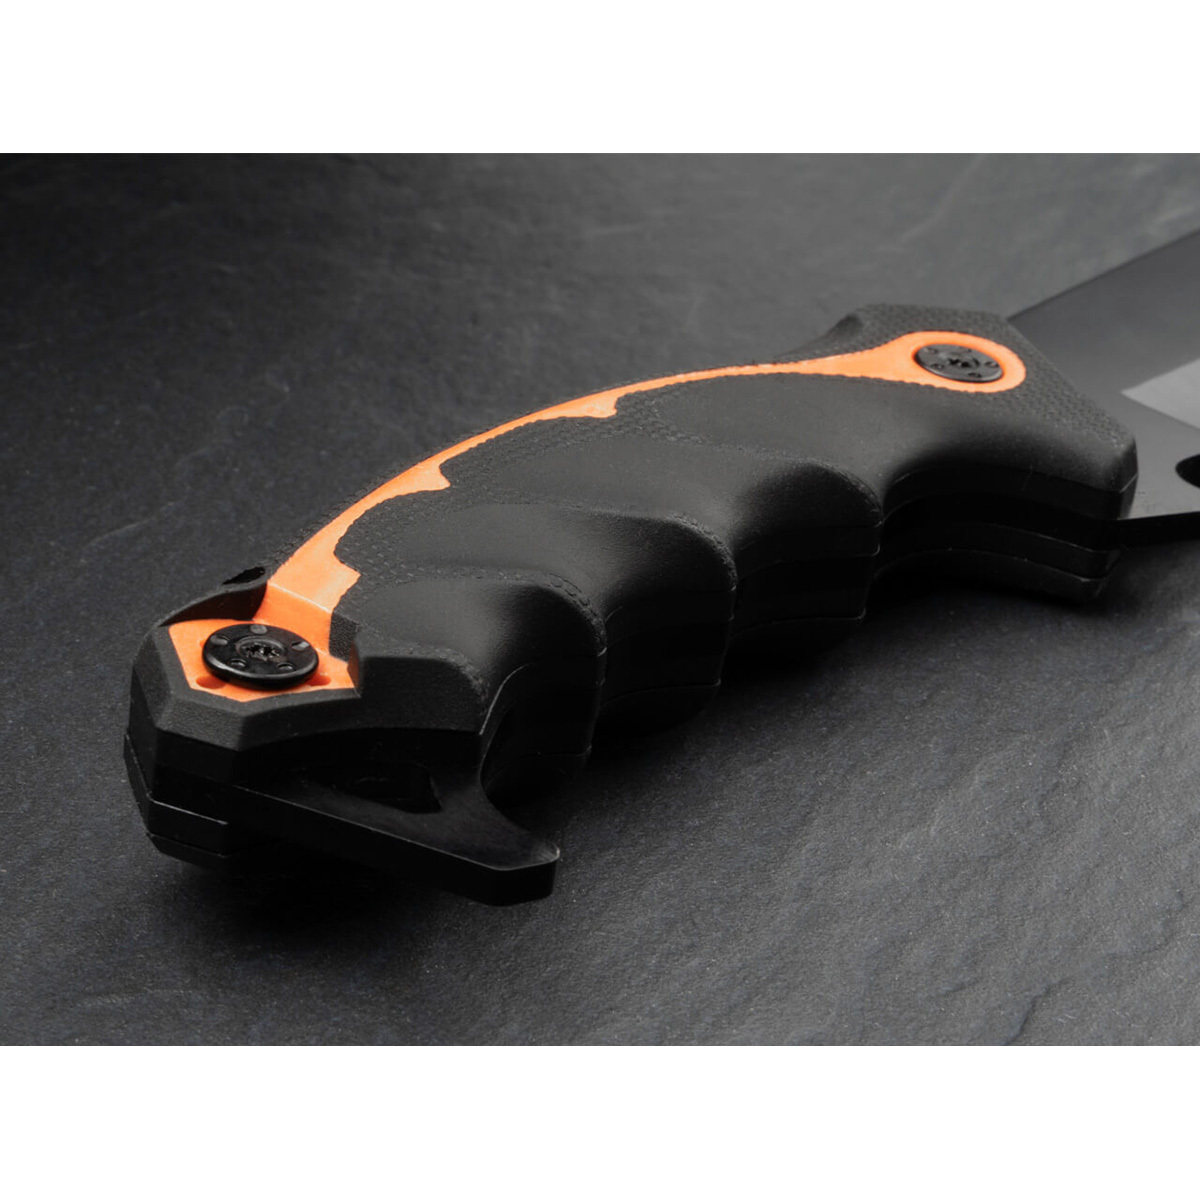 Мачете Boker Magnum CSB Latin Machete, сталь 420, рукоять резина, черный/оранжевый - фото 3